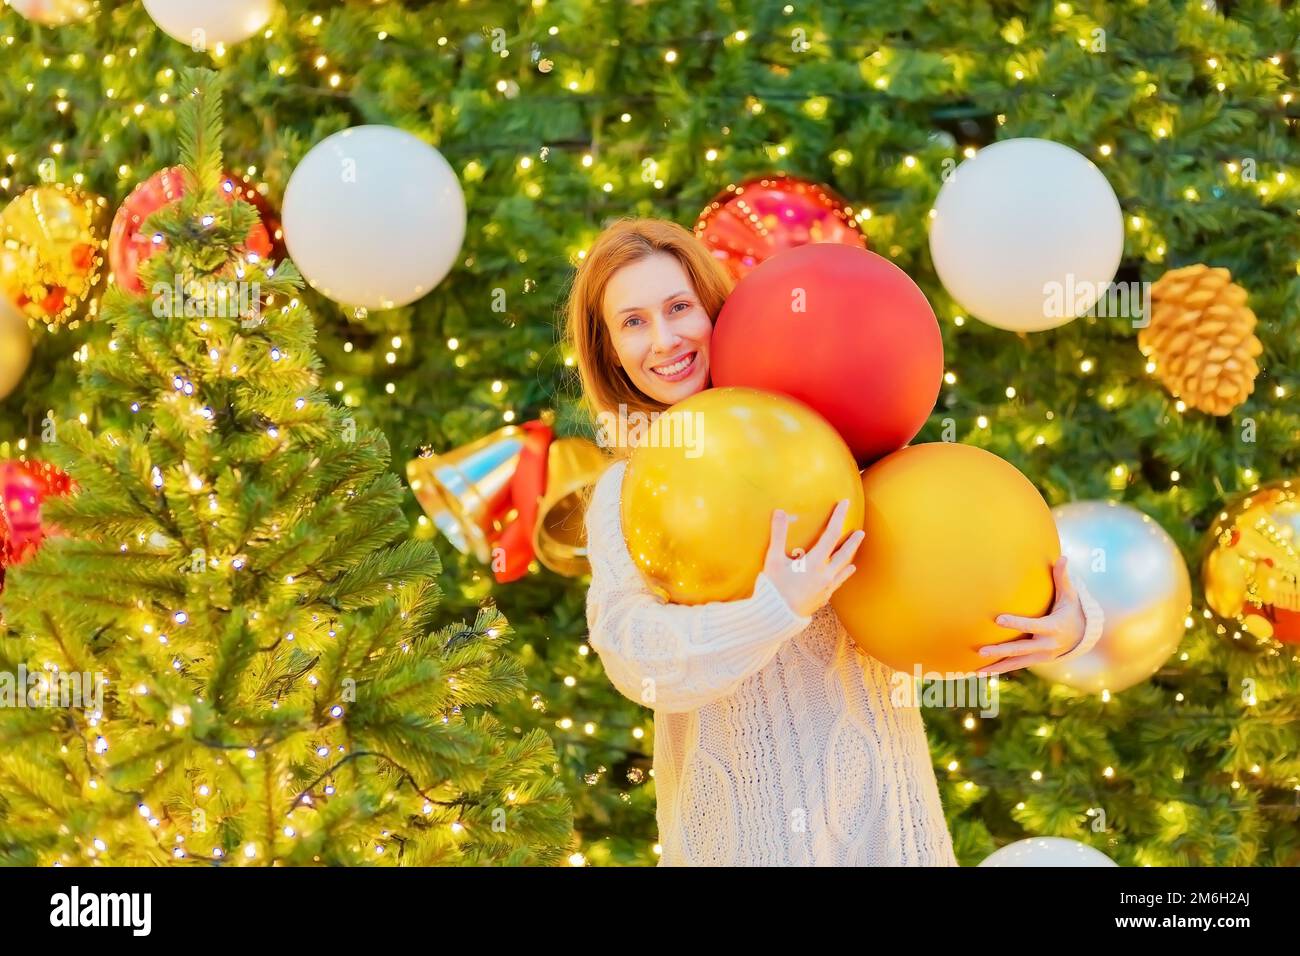 Fröhliches Mädchen mit großen Weihnachtsbällen in der Nähe glitzernder Weihnachtsbäume. Festliche Silvesteratmosphäre. Stockfoto